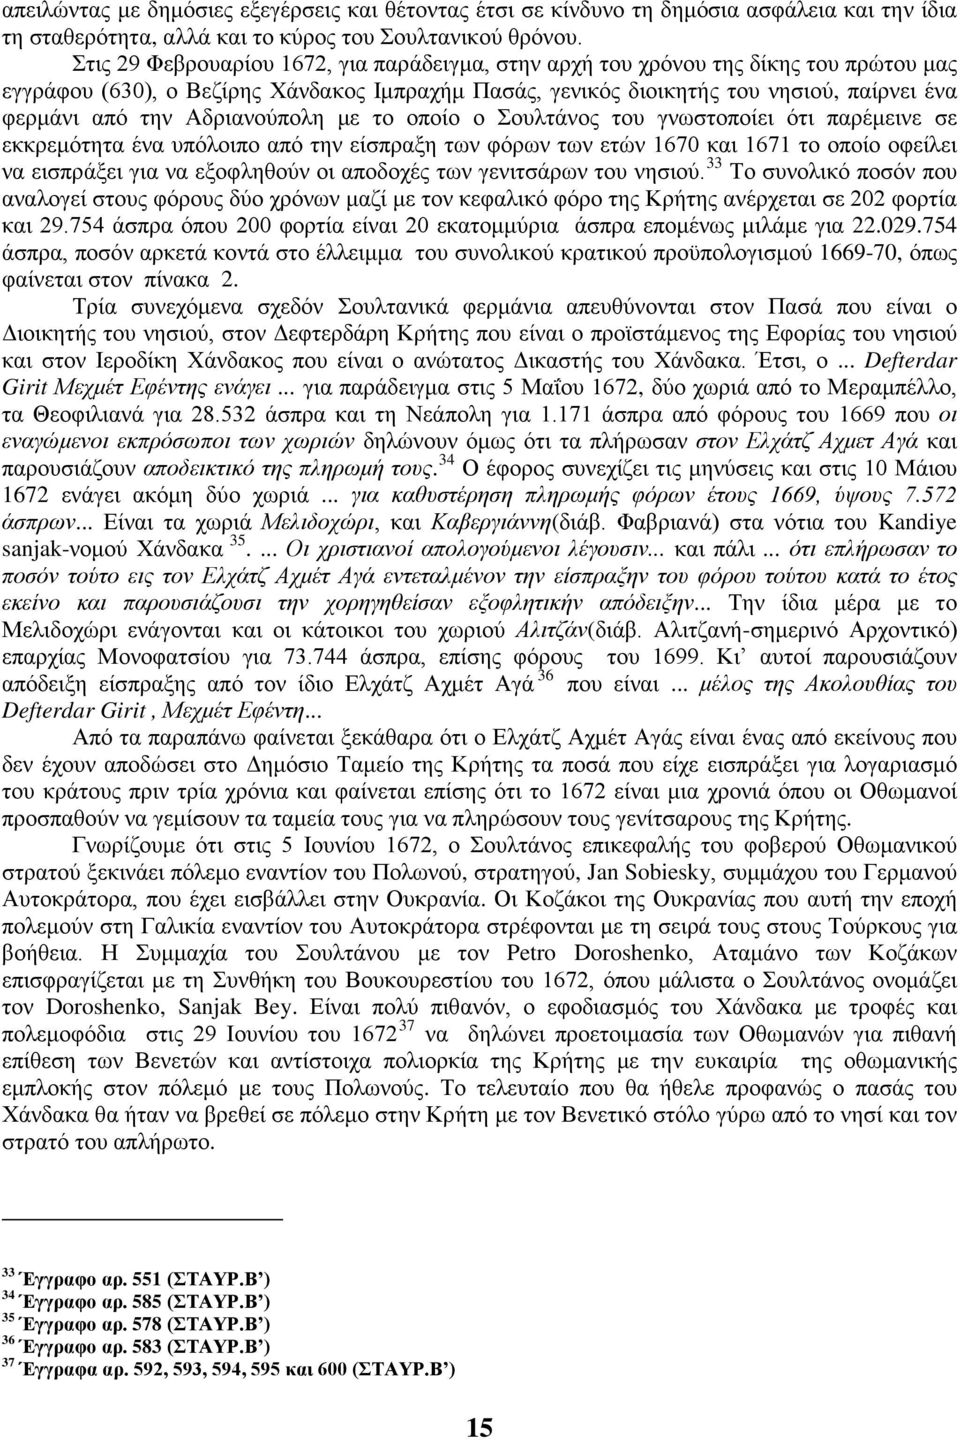 Αδριανούπολη με το οποίο ο Σουλτάνος του γνωστοποίει ότι παρέμεινε σε εκκρεμότητα ένα υπόλοιπο από την είσπραξη των φόρων των ετών 1670 και 1671 το οποίο οφείλει να εισπράξει για να εξοφληθούν οι